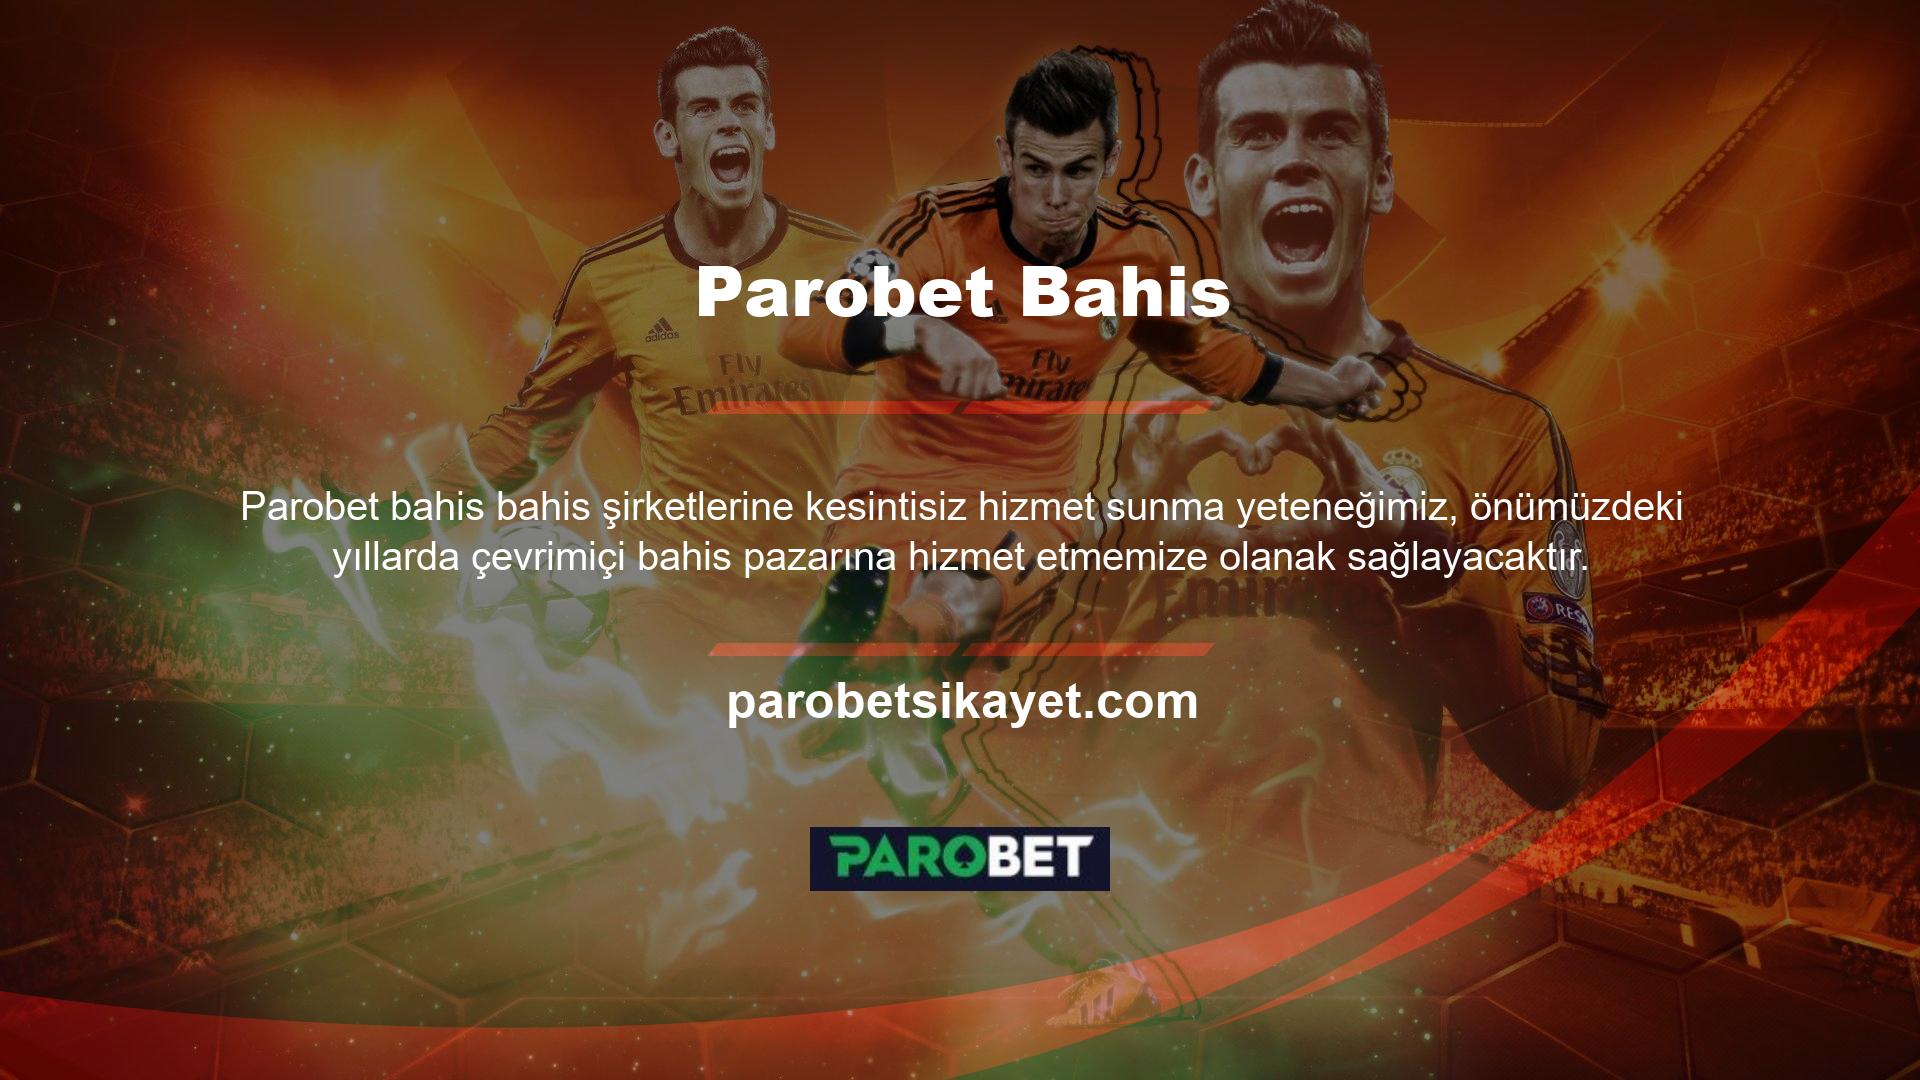 Türk oyunculara daha iyi hizmet verebilmek amacıyla giriş adresi değiştirilerek adres bilgileri kullanıcıya iletilmiştir